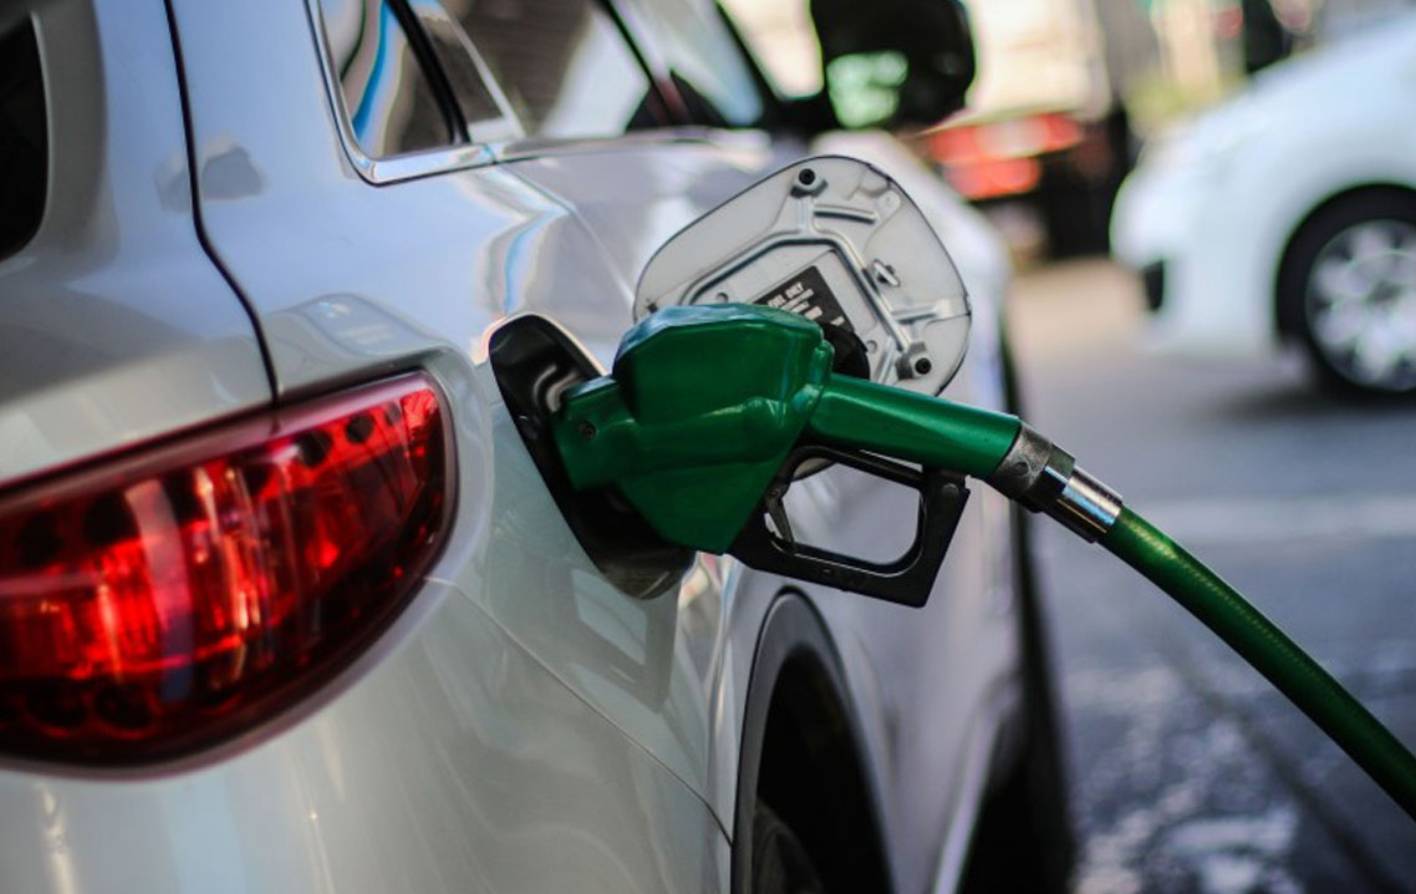 Precios de los combustibles en tiempos de COVID-19: Gasolinas suben